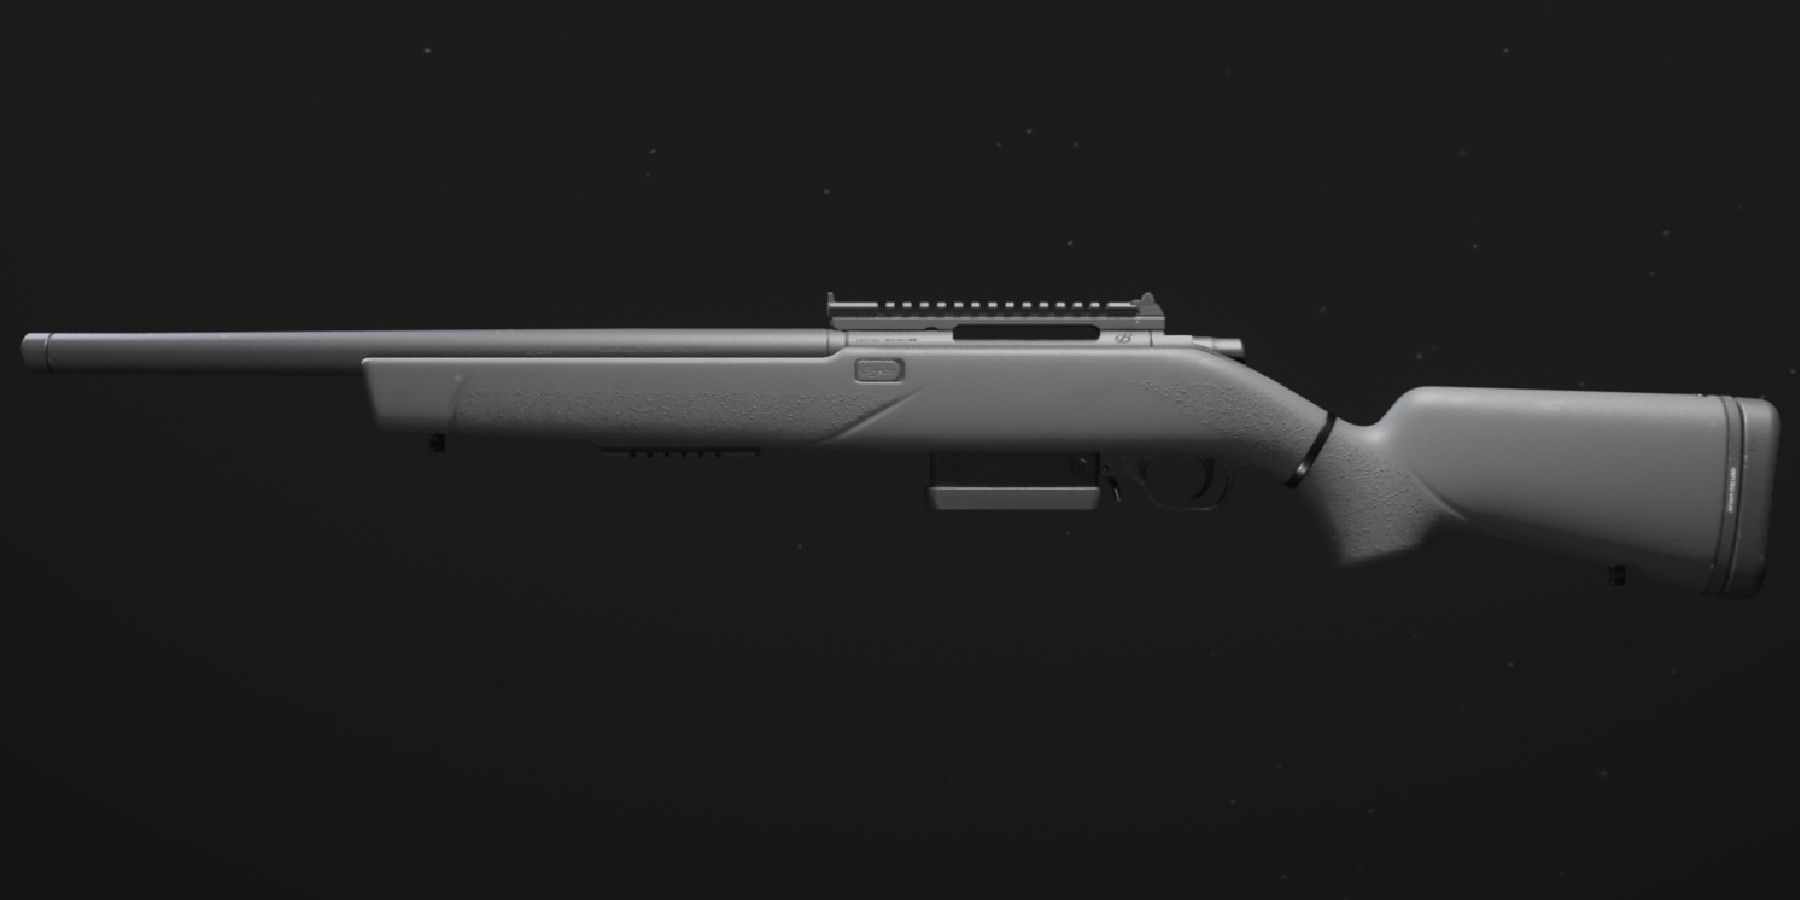 mw3 - weapon camos - sp-r 208